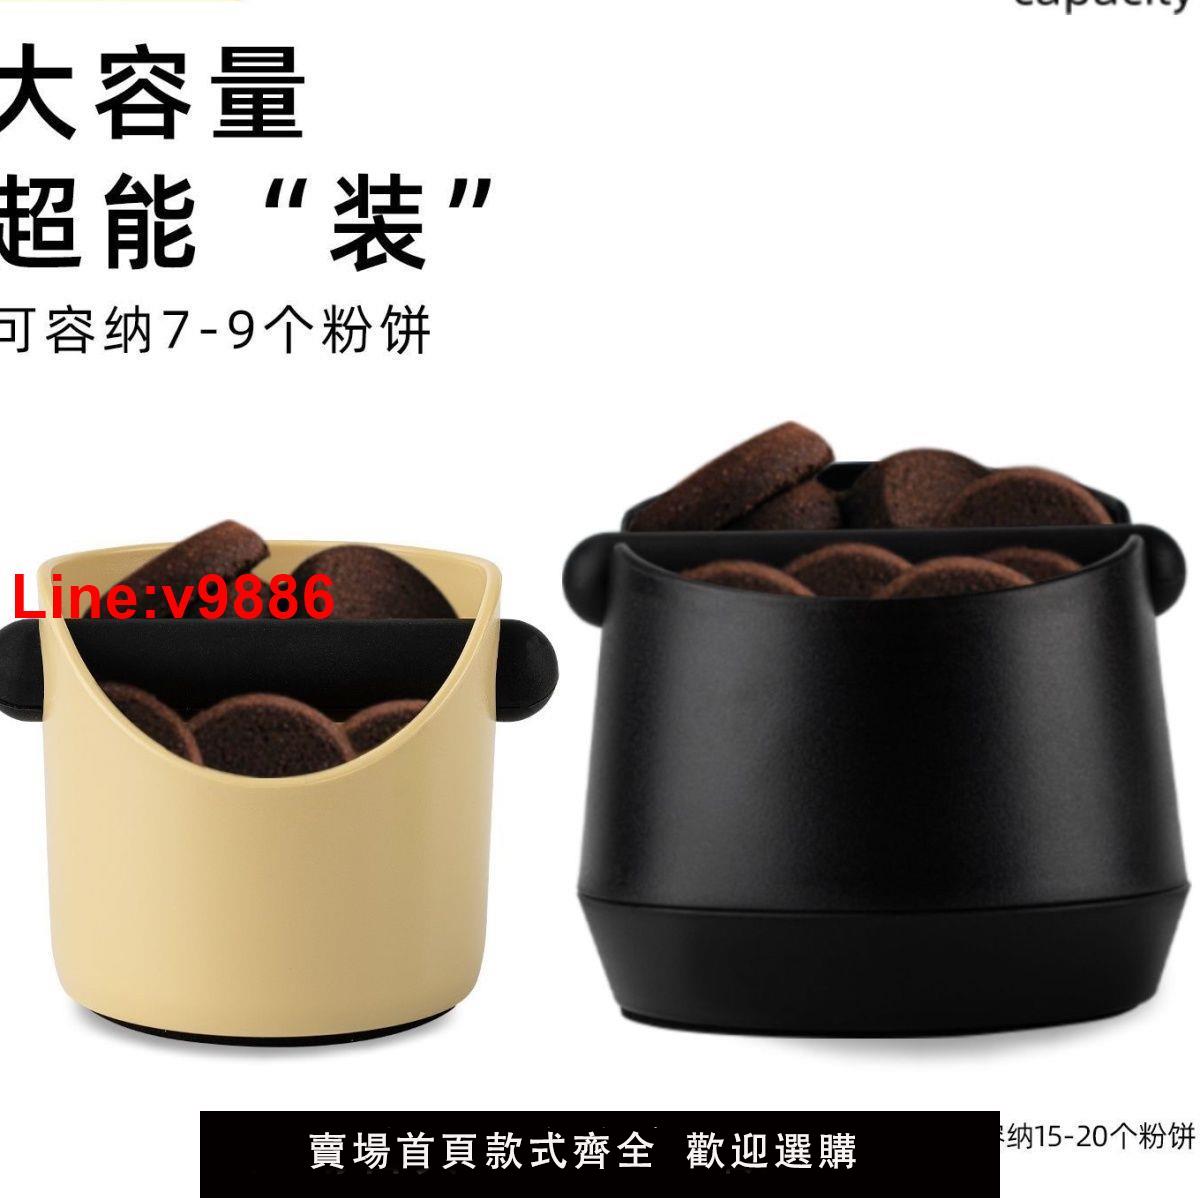 【台灣公司 超低價】馬卡龍色咖啡渣桶家用吧臺 咖啡機廢粉渣小號加厚敲渣桶收納渣盒